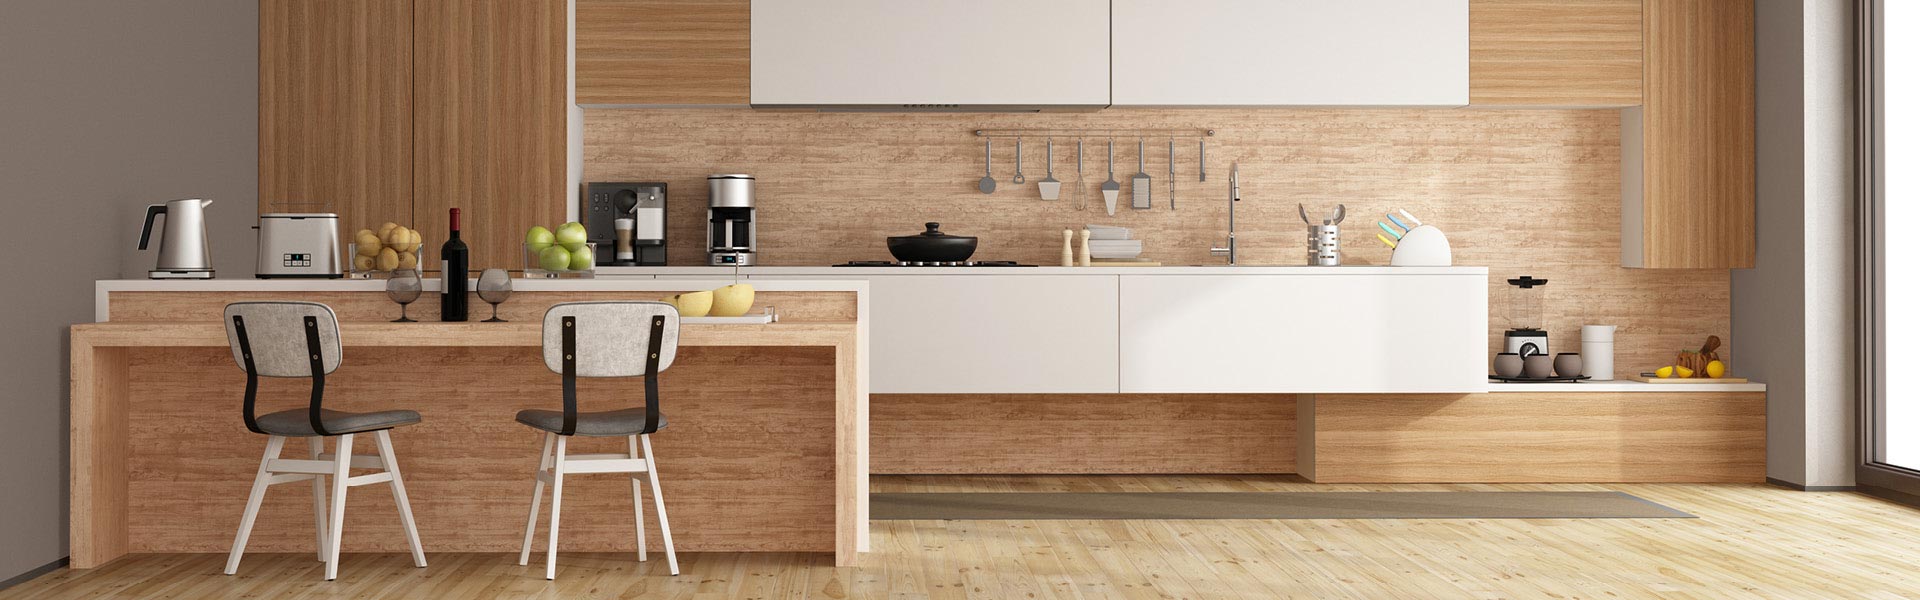 moderne Küche nach Maß mit hellem Holz woodendesign feine Möbel Tischler Möbeltischler Möbeltischlerei Hamburg